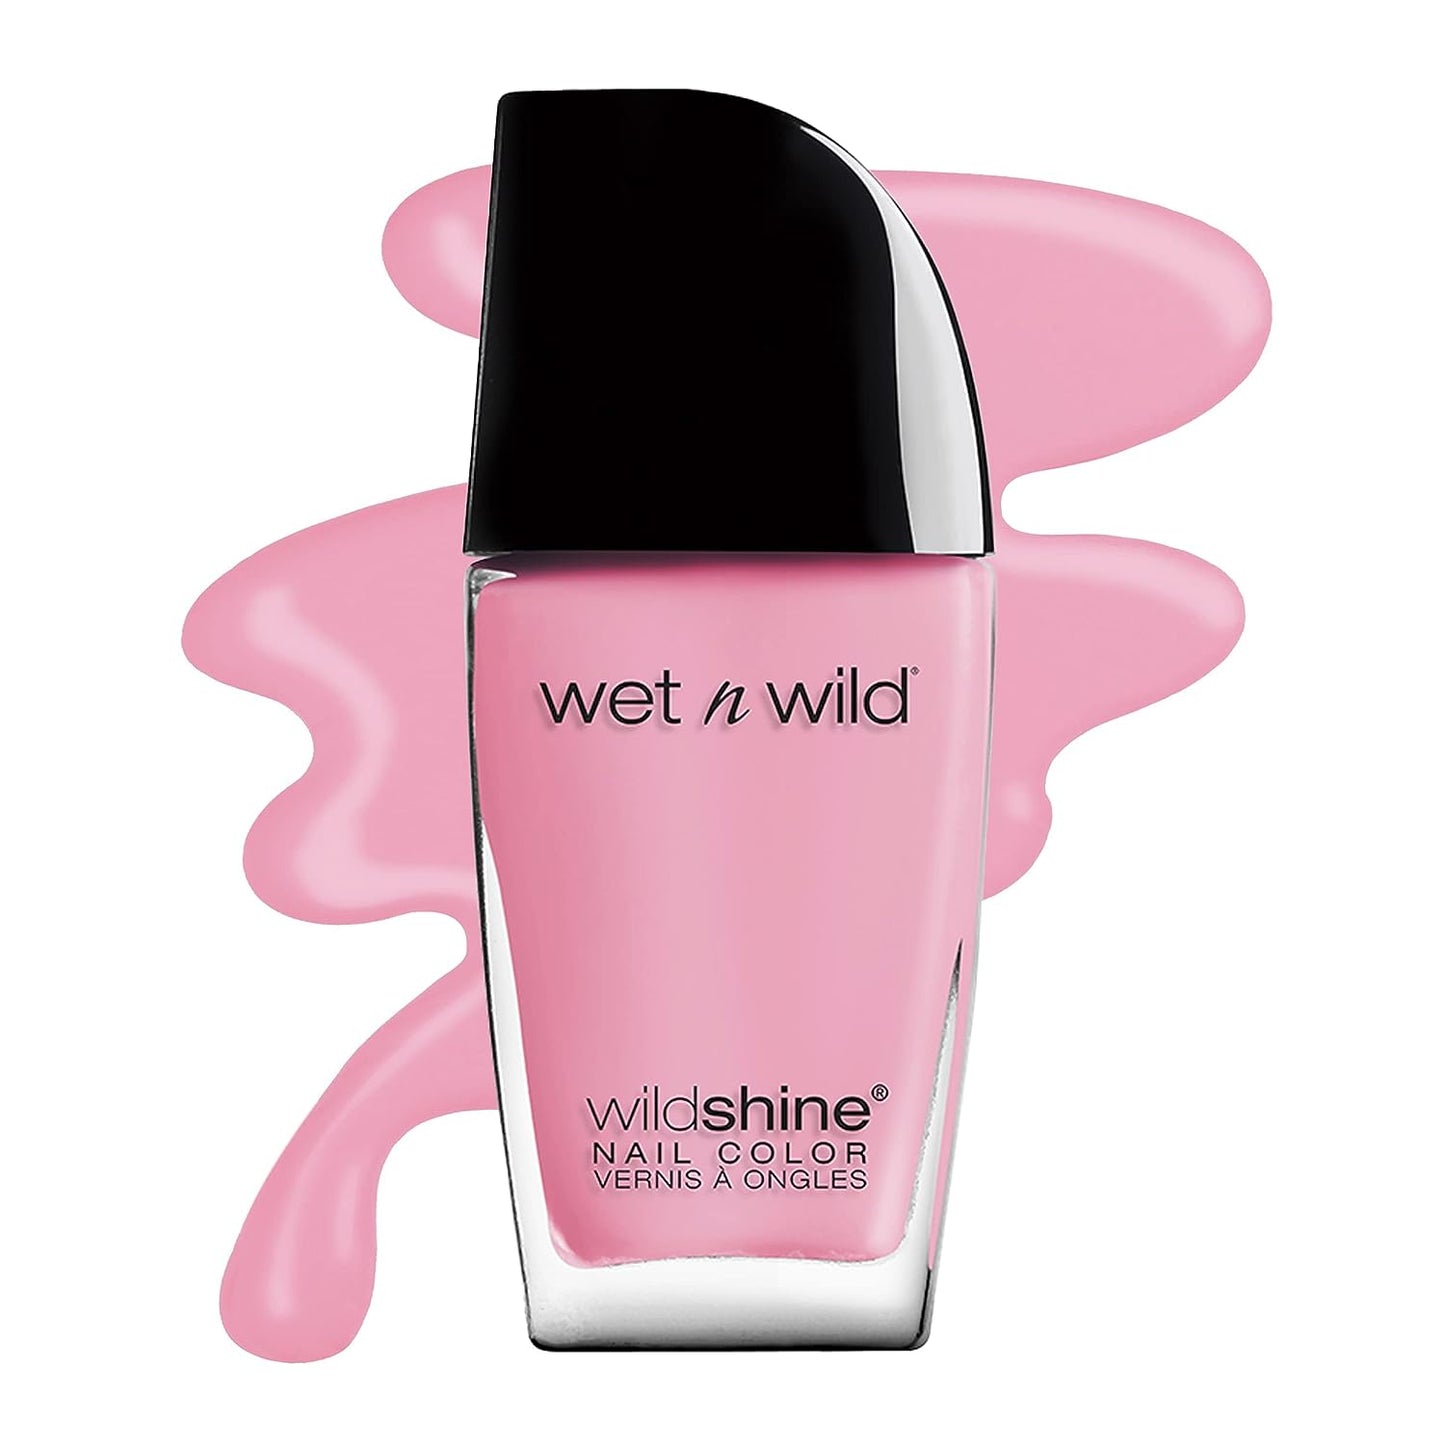 Wet n Wild Nail Polish - Wild Shine, Orange Blazed - Premium nail polish from Concordia Style Boutique - Just $2.93! Shop now at Concordia Style Boutique